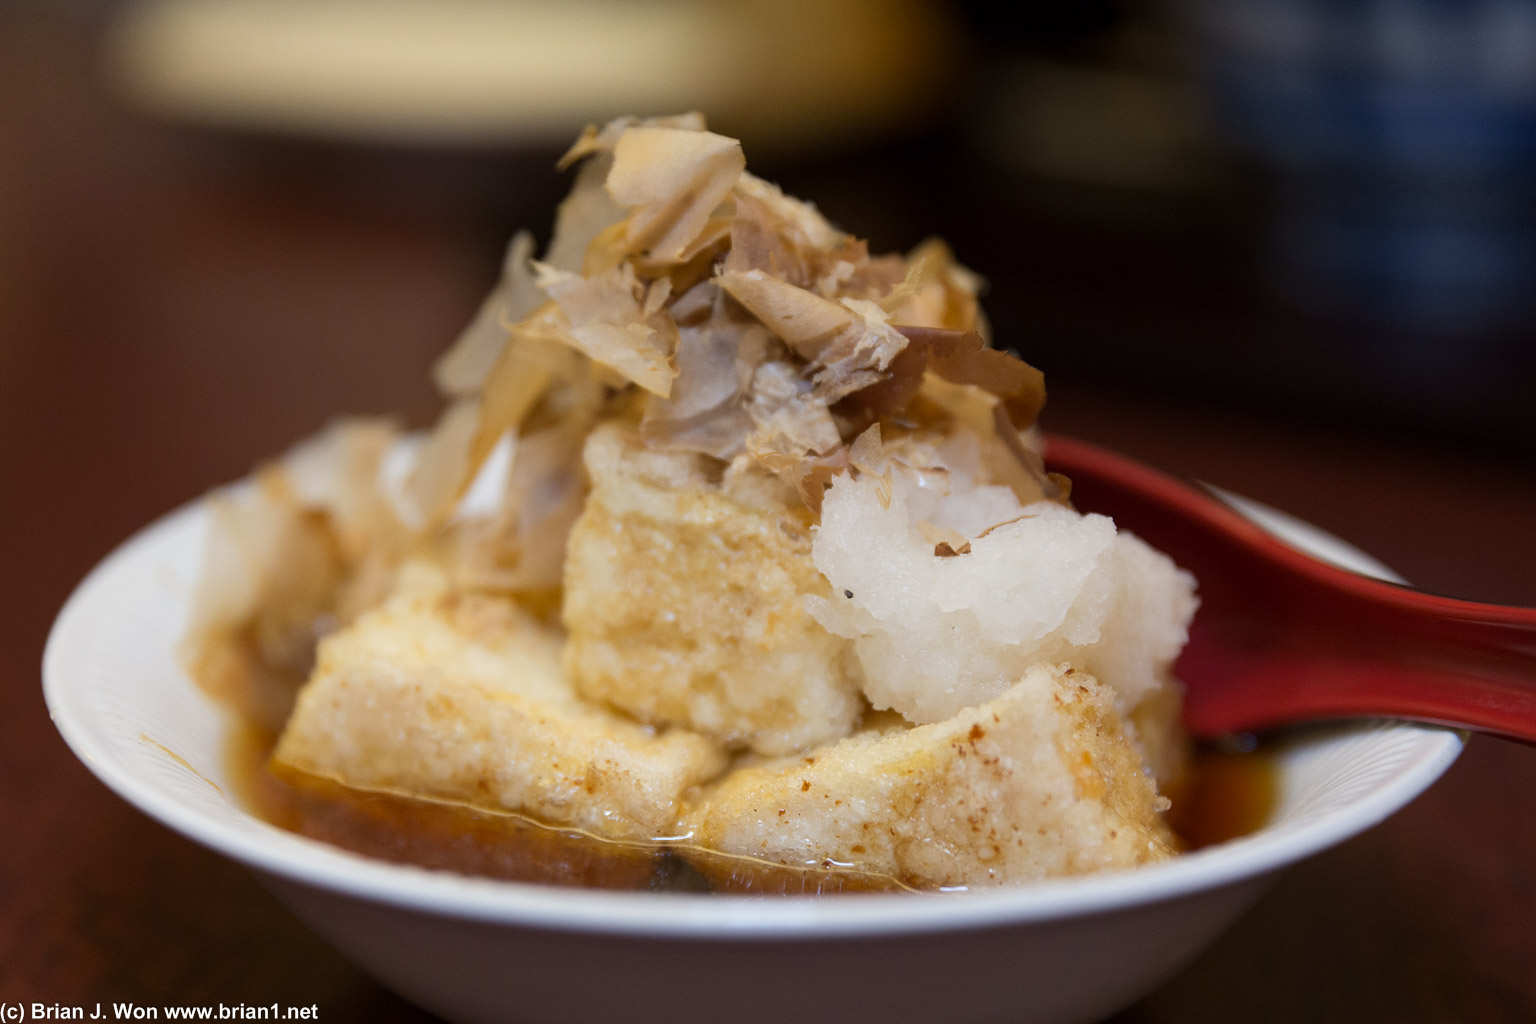 Agedashi tofu. Pretty good, bit too much broth.